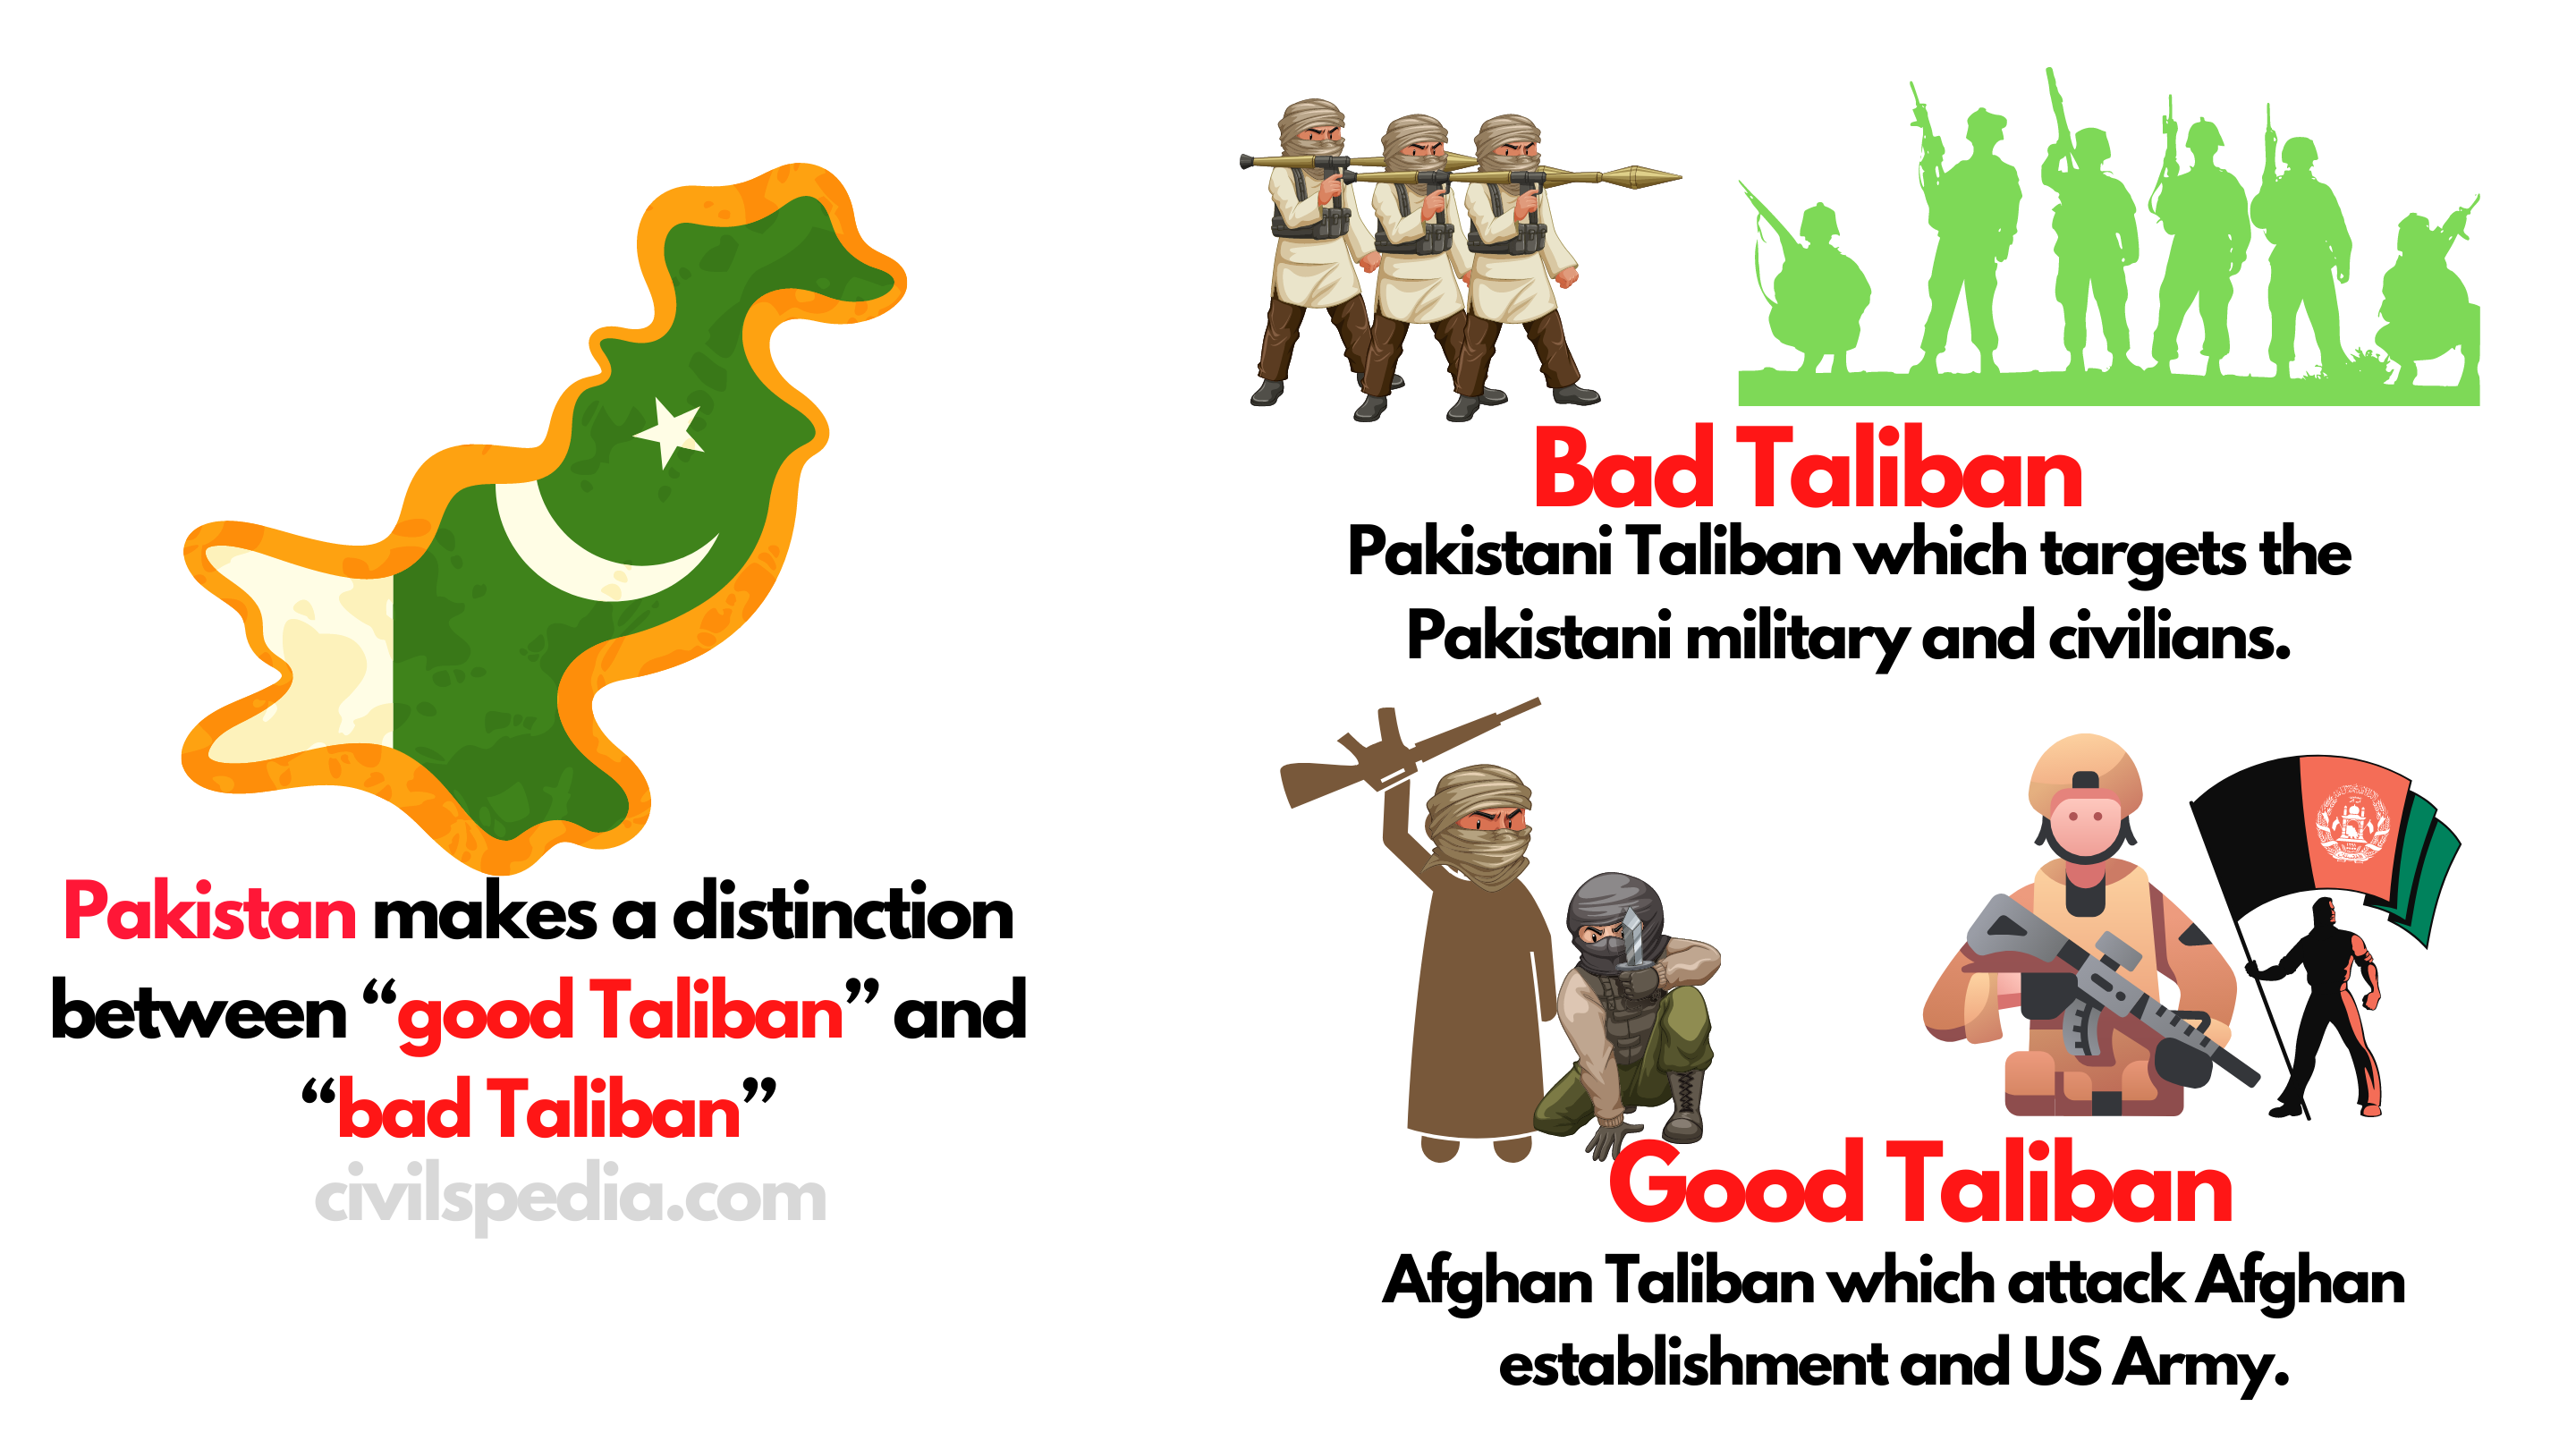 Good Taliban and Bad Taliban